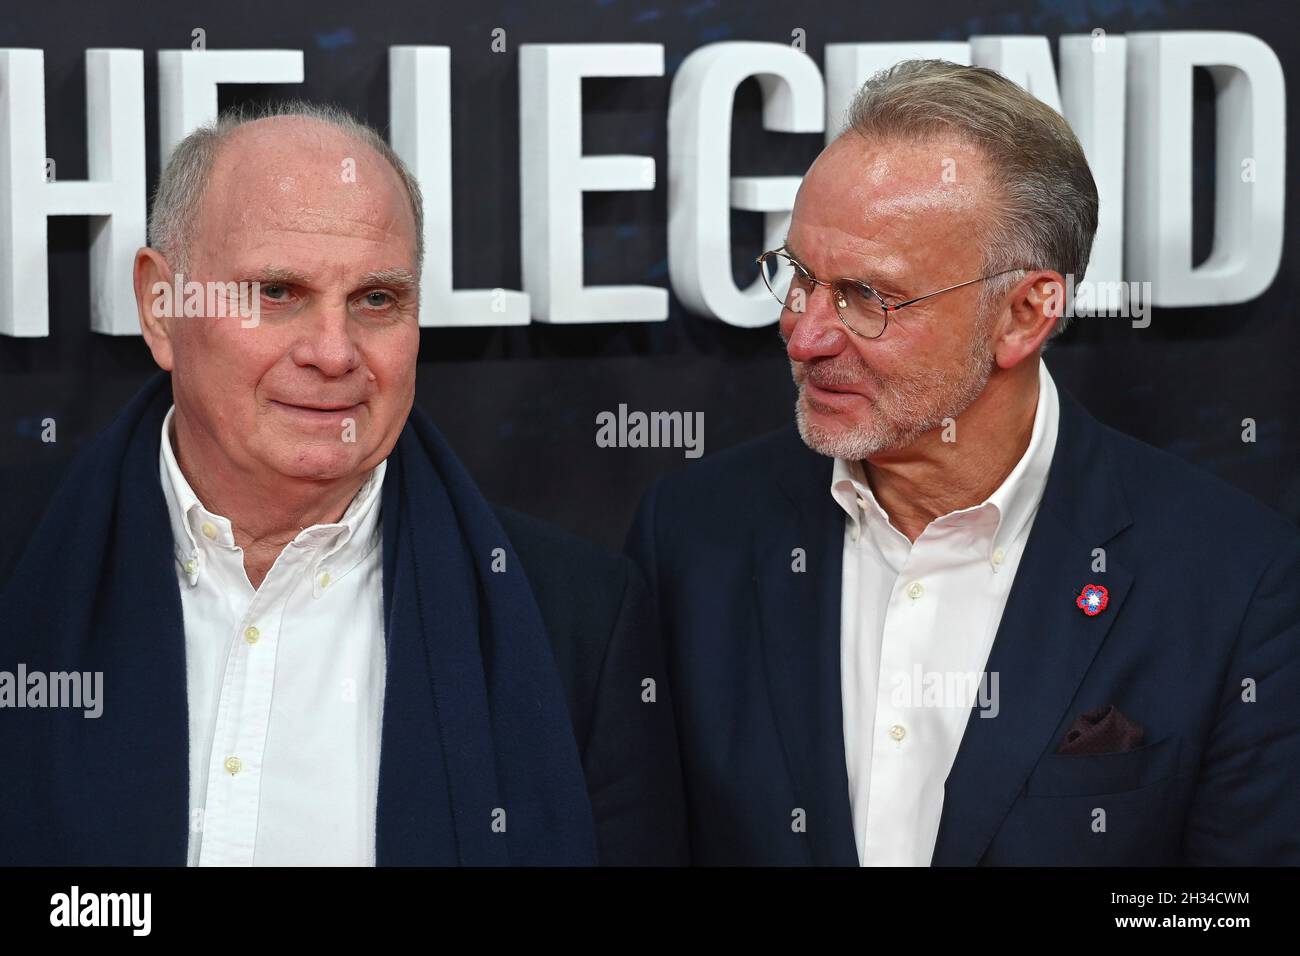 De gauche à droite : Uli HOENESS (Höness, Président honoraire du FC Bayern Munich), Karl Heinz RUMMENIGGE (ancien PDG).Première partie pour l'Amazonie documentaire original FC BAYERN - DERRIÈRE LA LÉGENDE le 25 octobre 2021 à l'Arri Kino à Munich.Moquette rouge. Banque D'Images